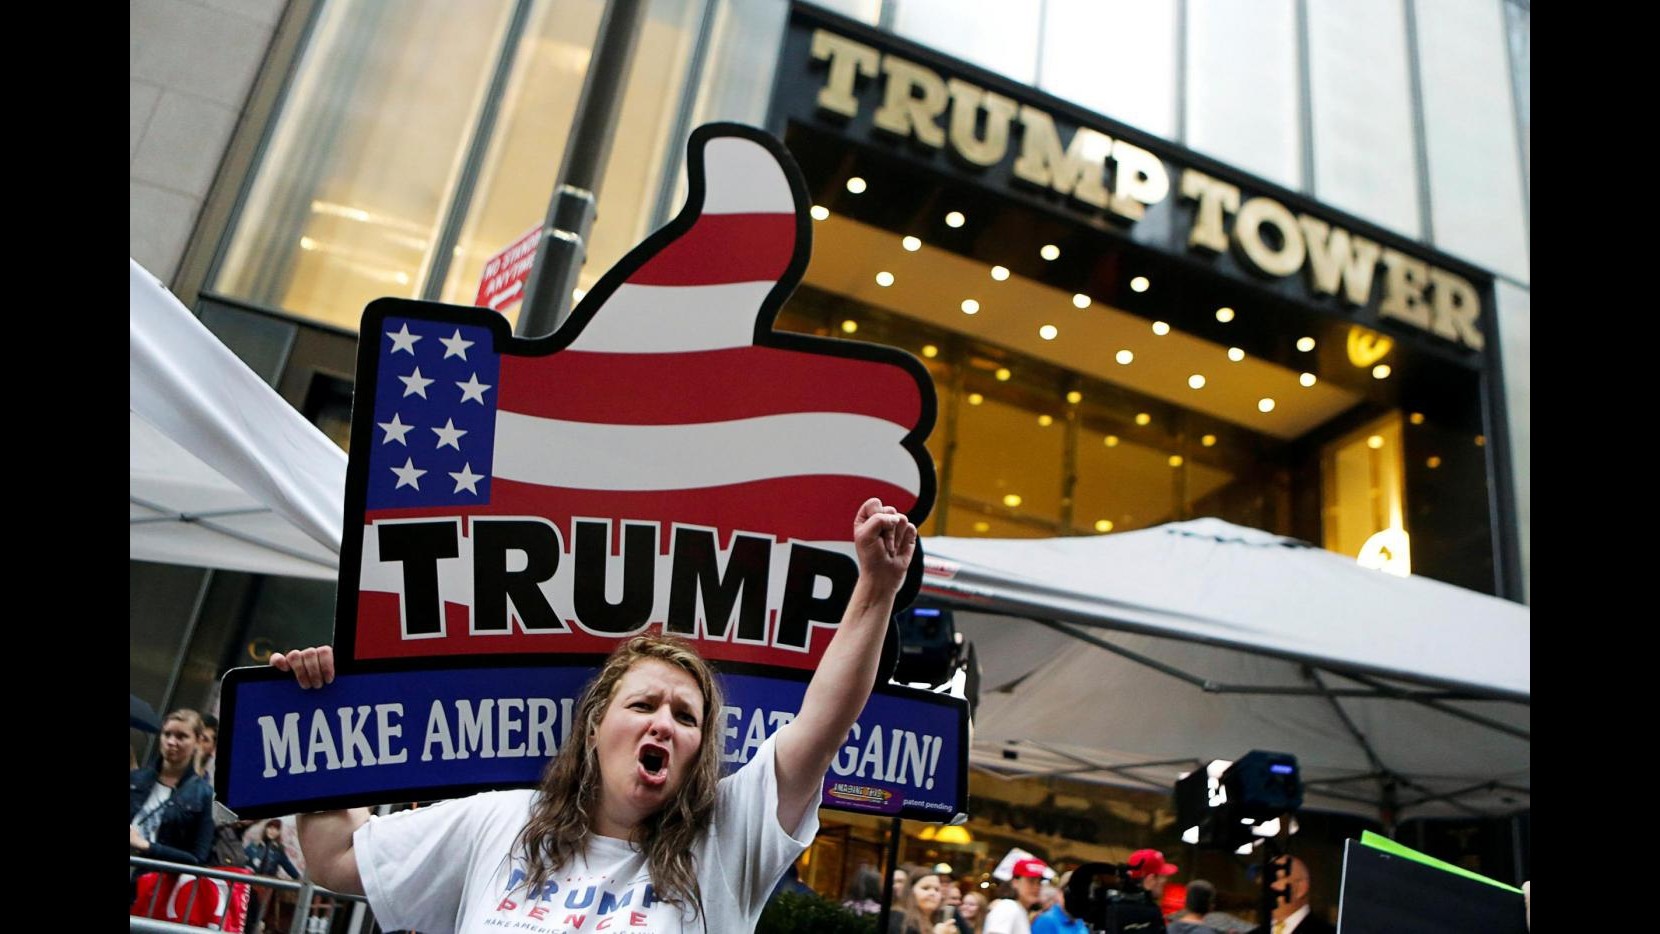 FOTO Folla sotto la Trump Tower: ‘uomini pene’ e slip pro magnate